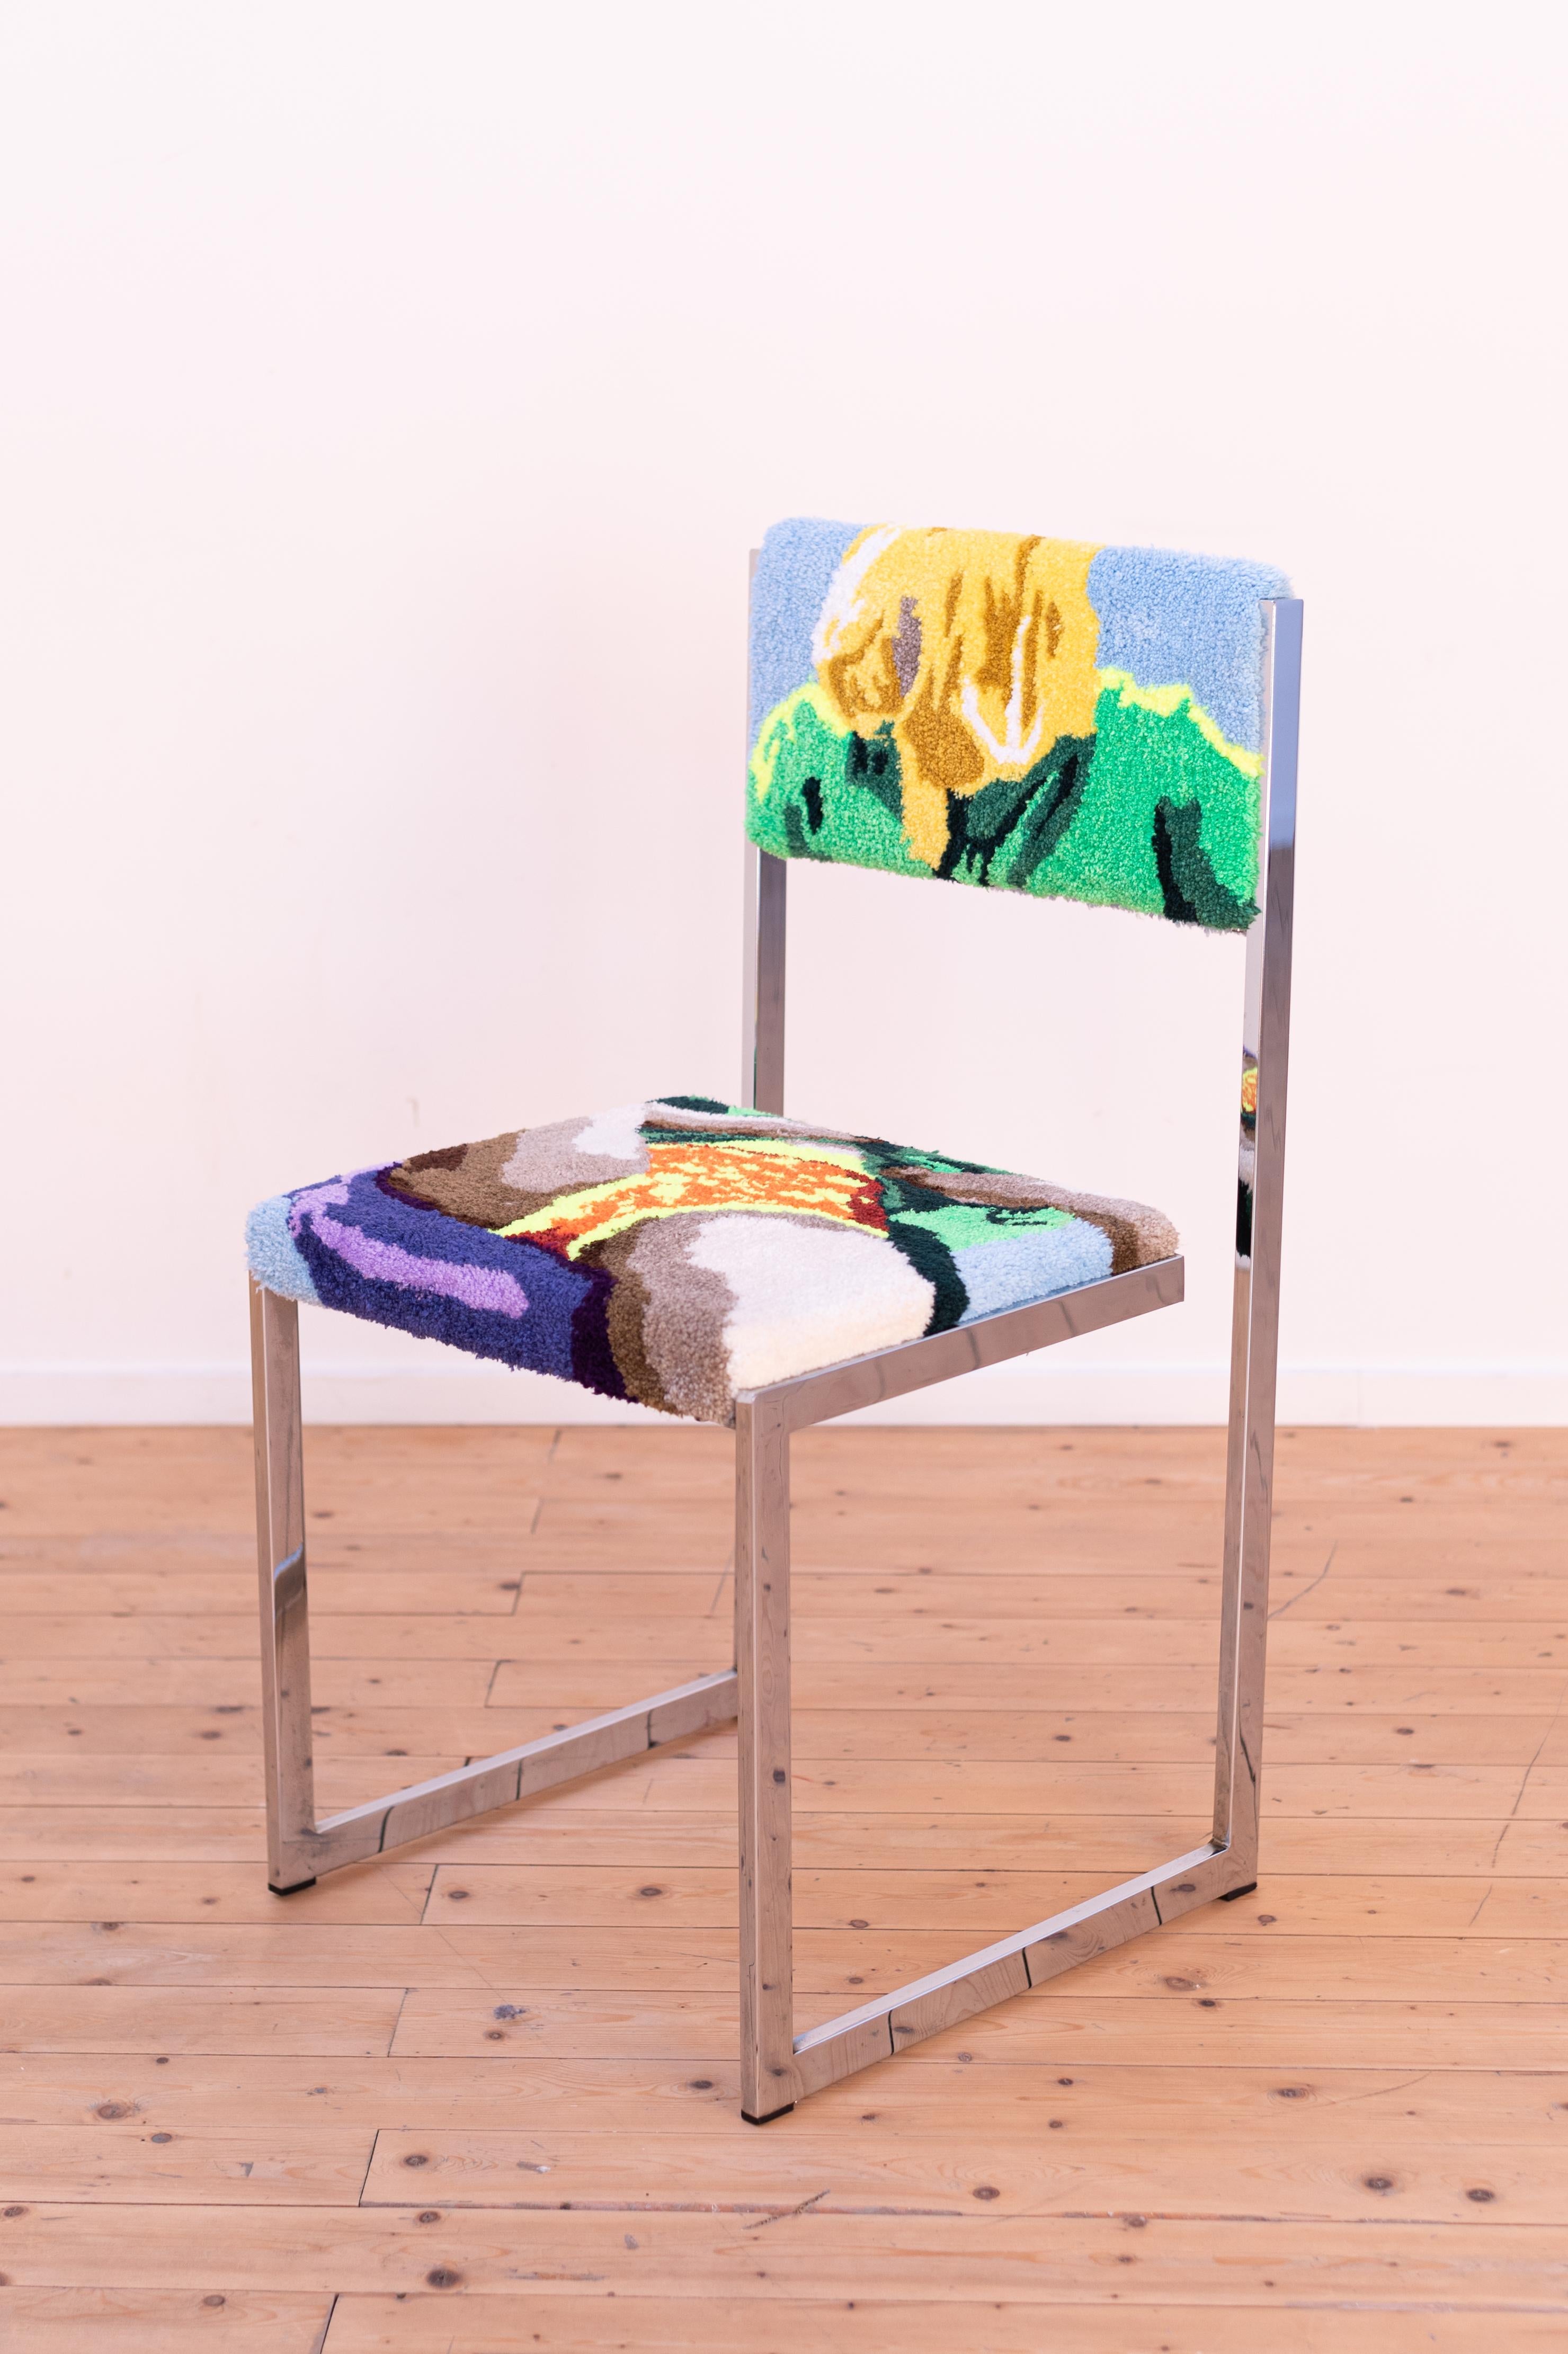 Textilkünstlerin Martha Samyn (Oudenaarde (BE), 1997-  ) hat für diesen Designstuhl einen einzigartigen 